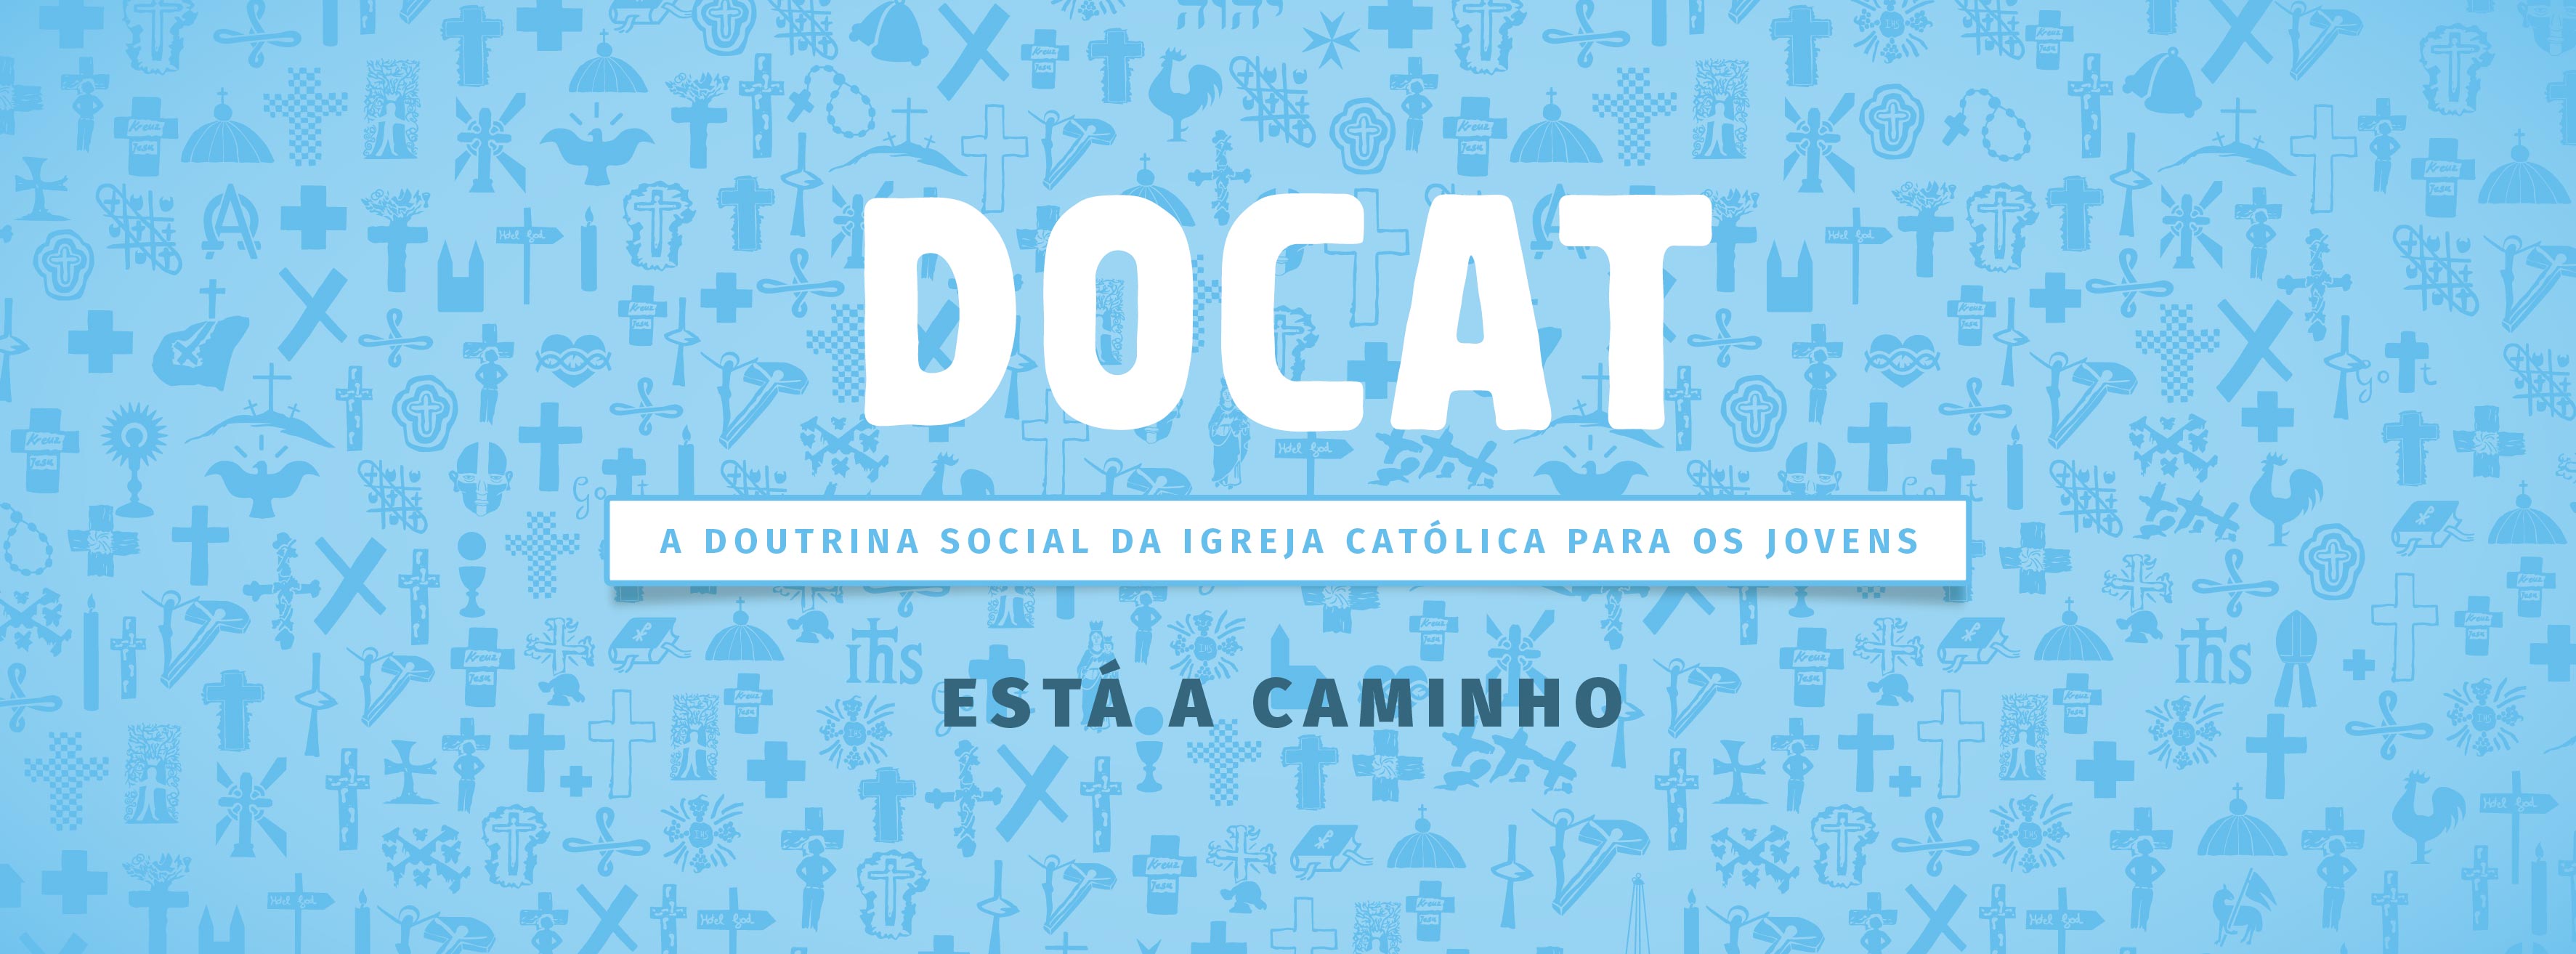 DOCAT – A Doutrina Social da Igreja Católica para os Jovens